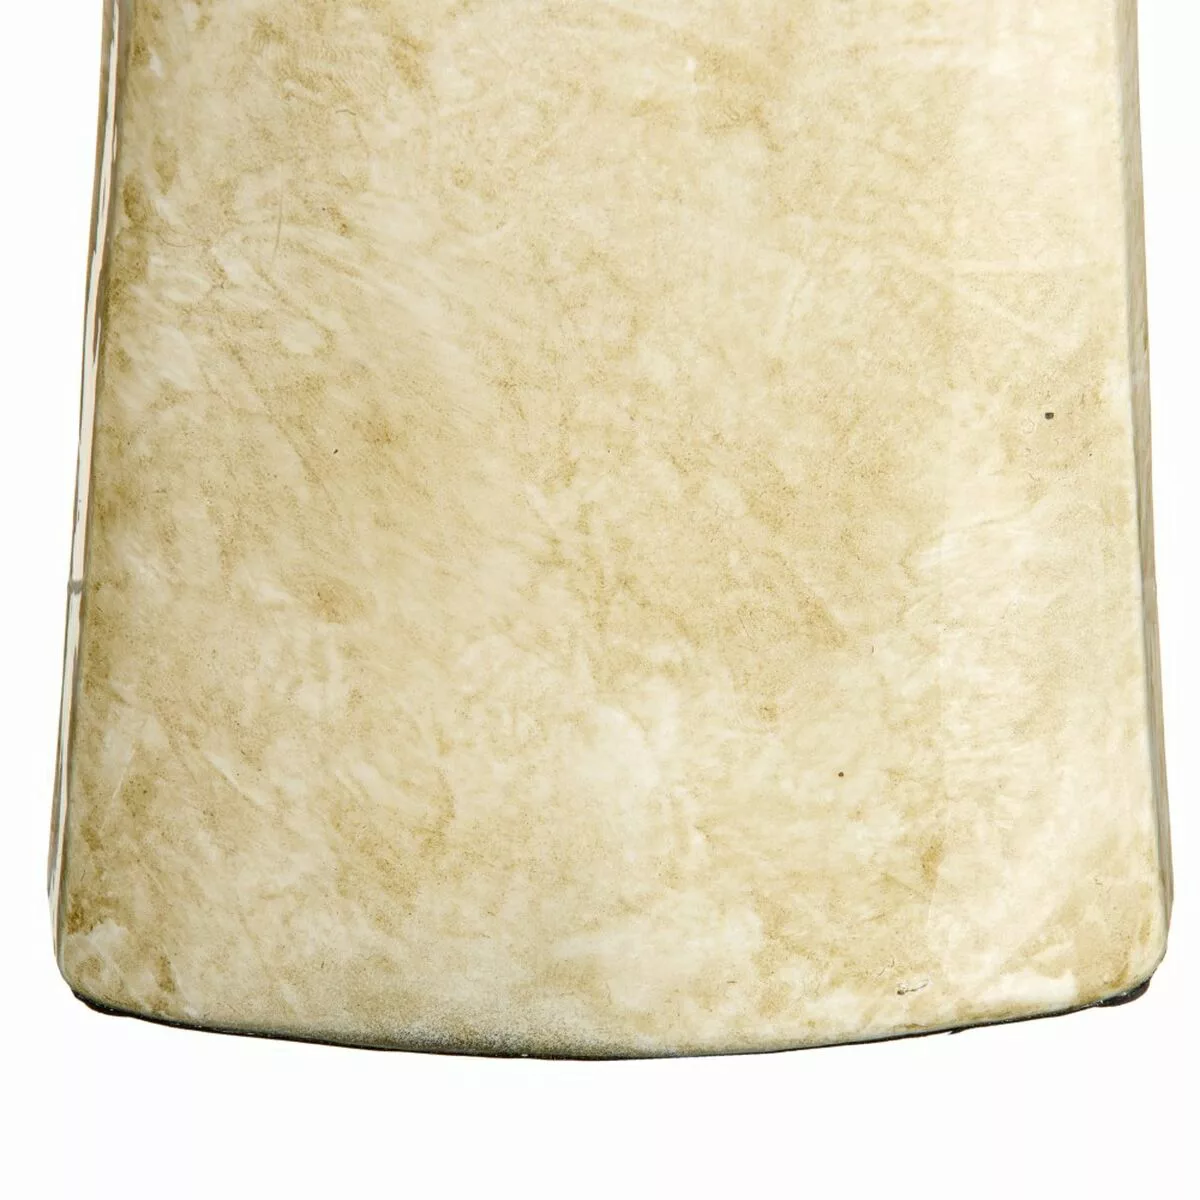 Vase Kristall Gold Metall Weiß 10 X 10 X 53 Cm günstig online kaufen